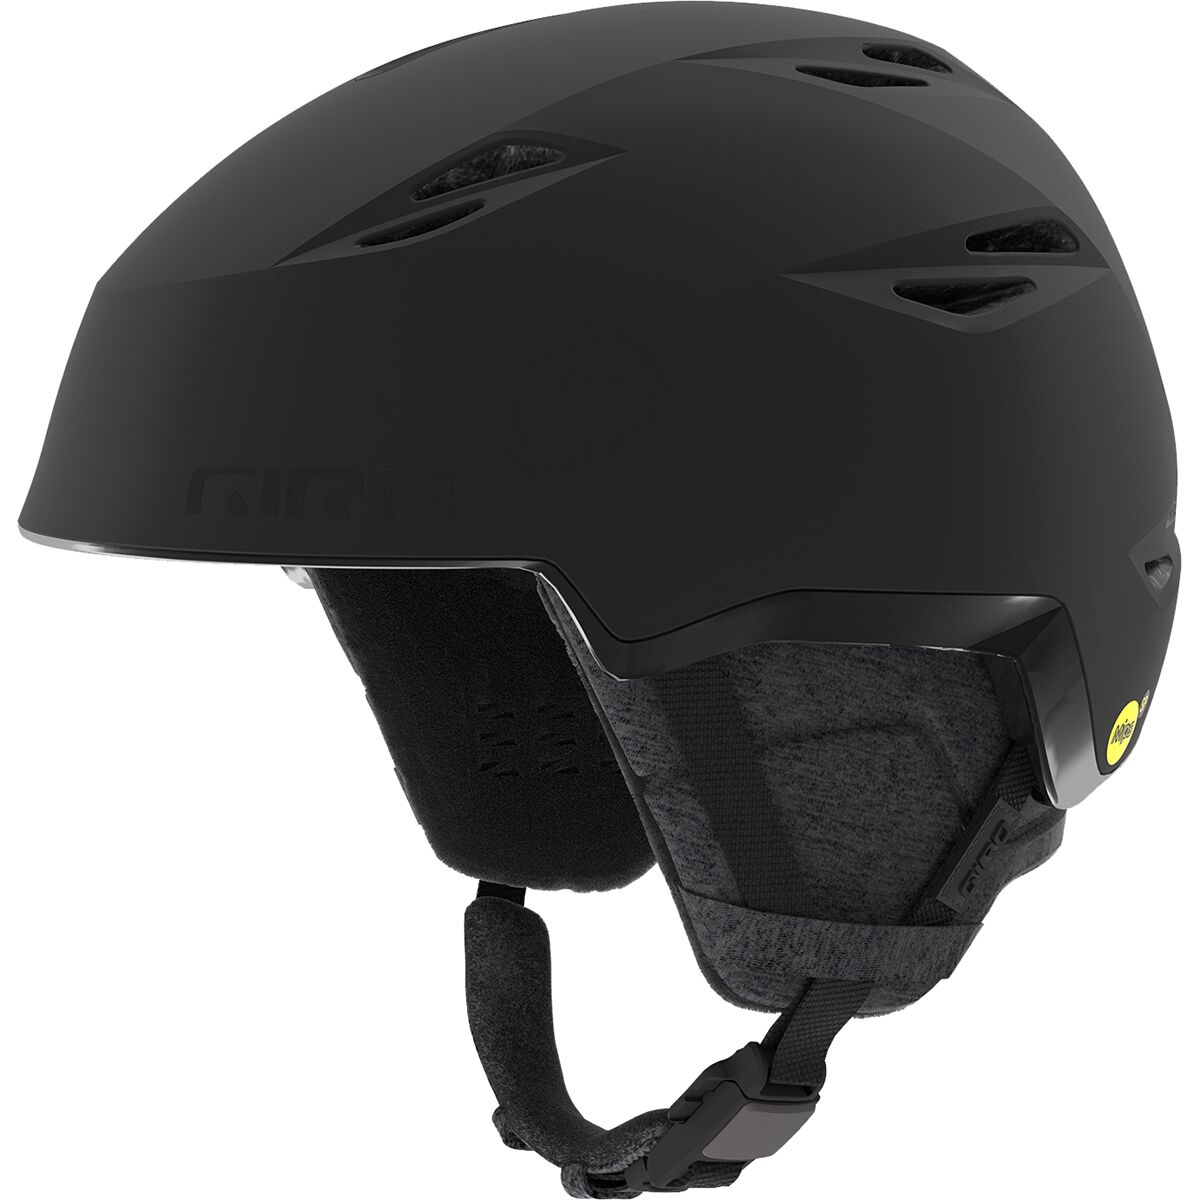 best budget snowboard helmet: Giro ERA Mips helmet